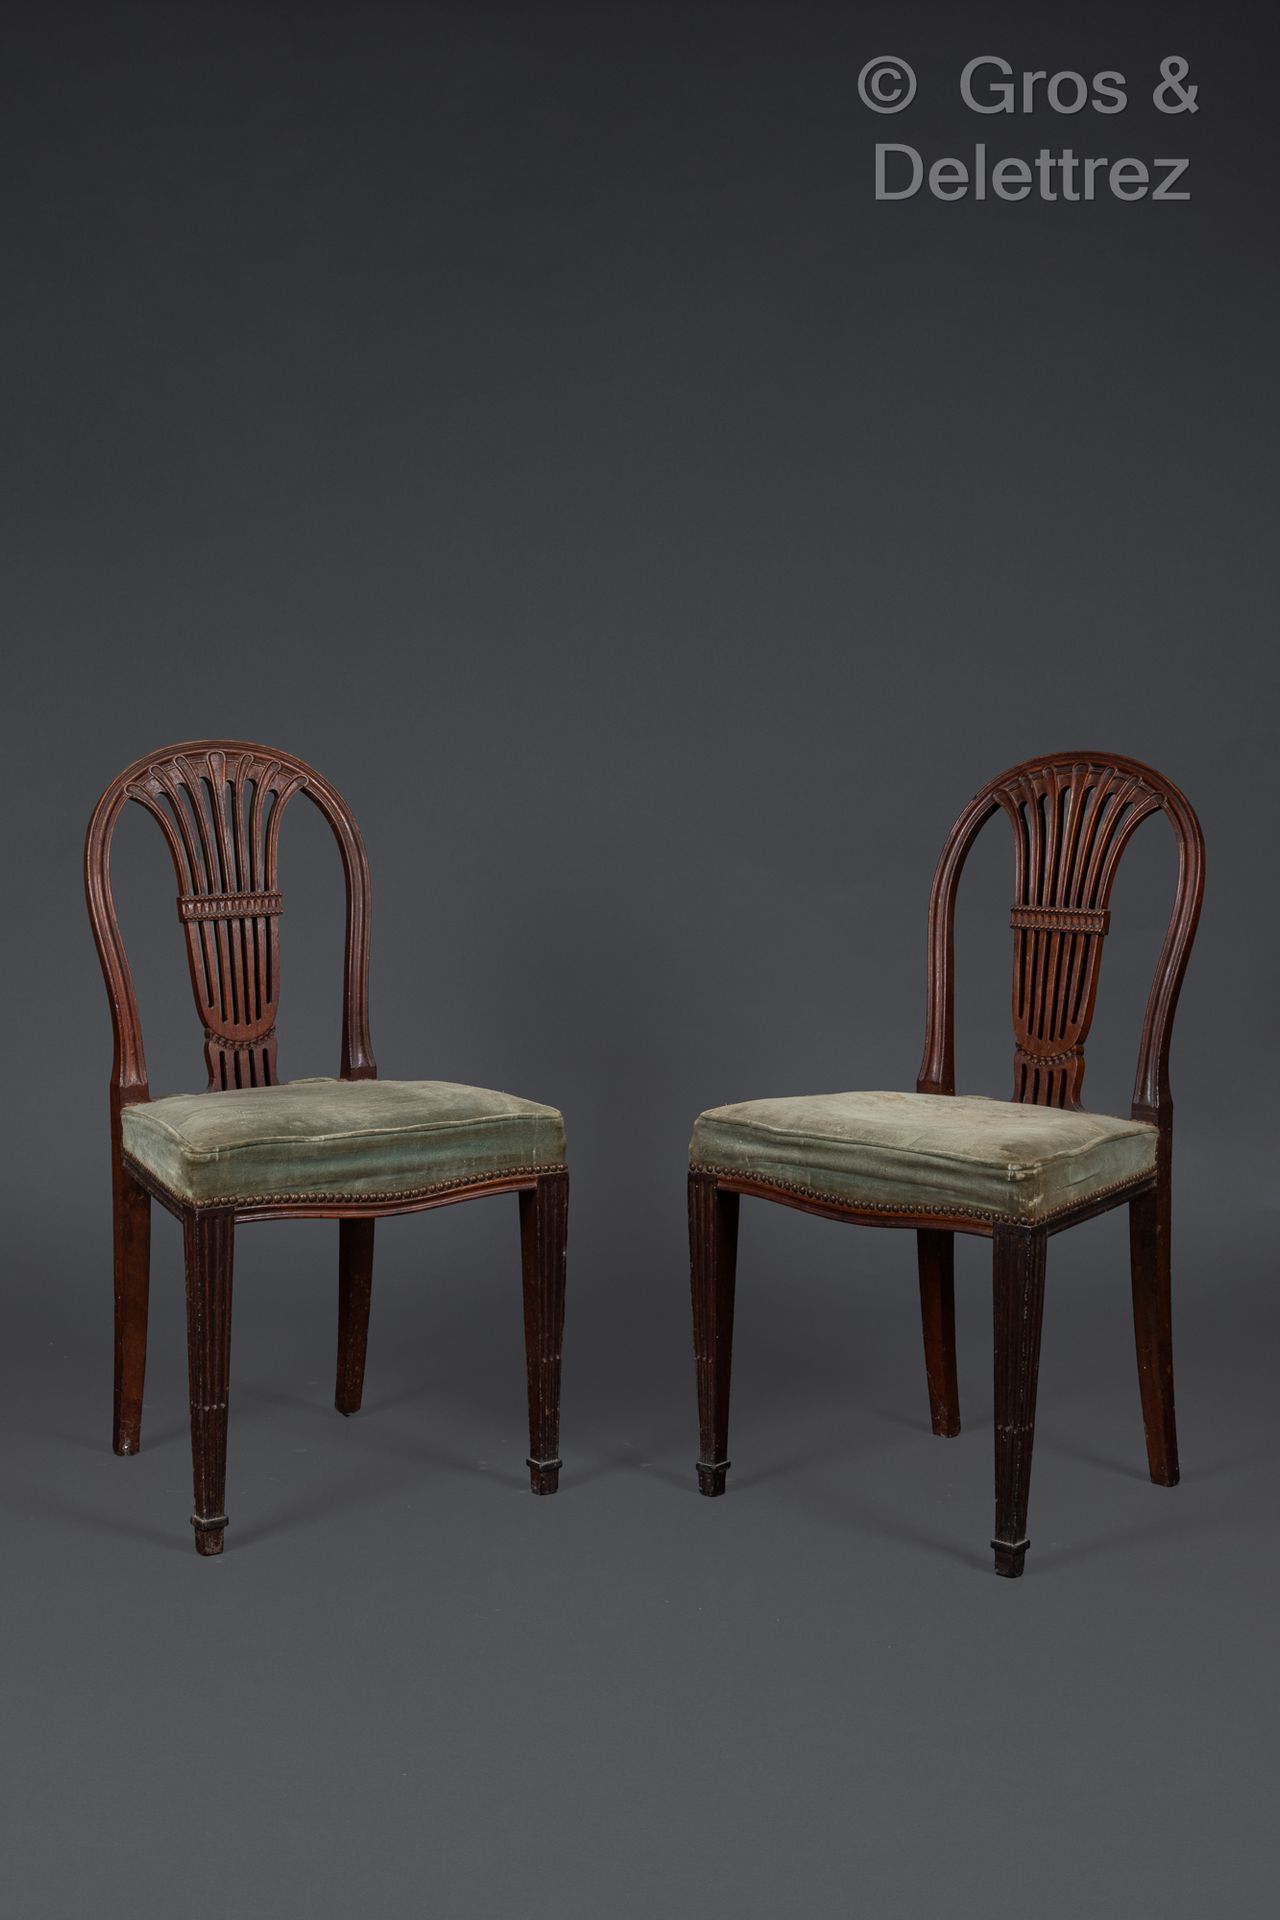 Null 一对桃花心木和桃花心木贴面椅子，椅背镂空饰有花饰和珍珠，靠在四条四角形凹槽腿上，前端有花边。
19 世纪英国作品
90 x 48 x 43 厘米